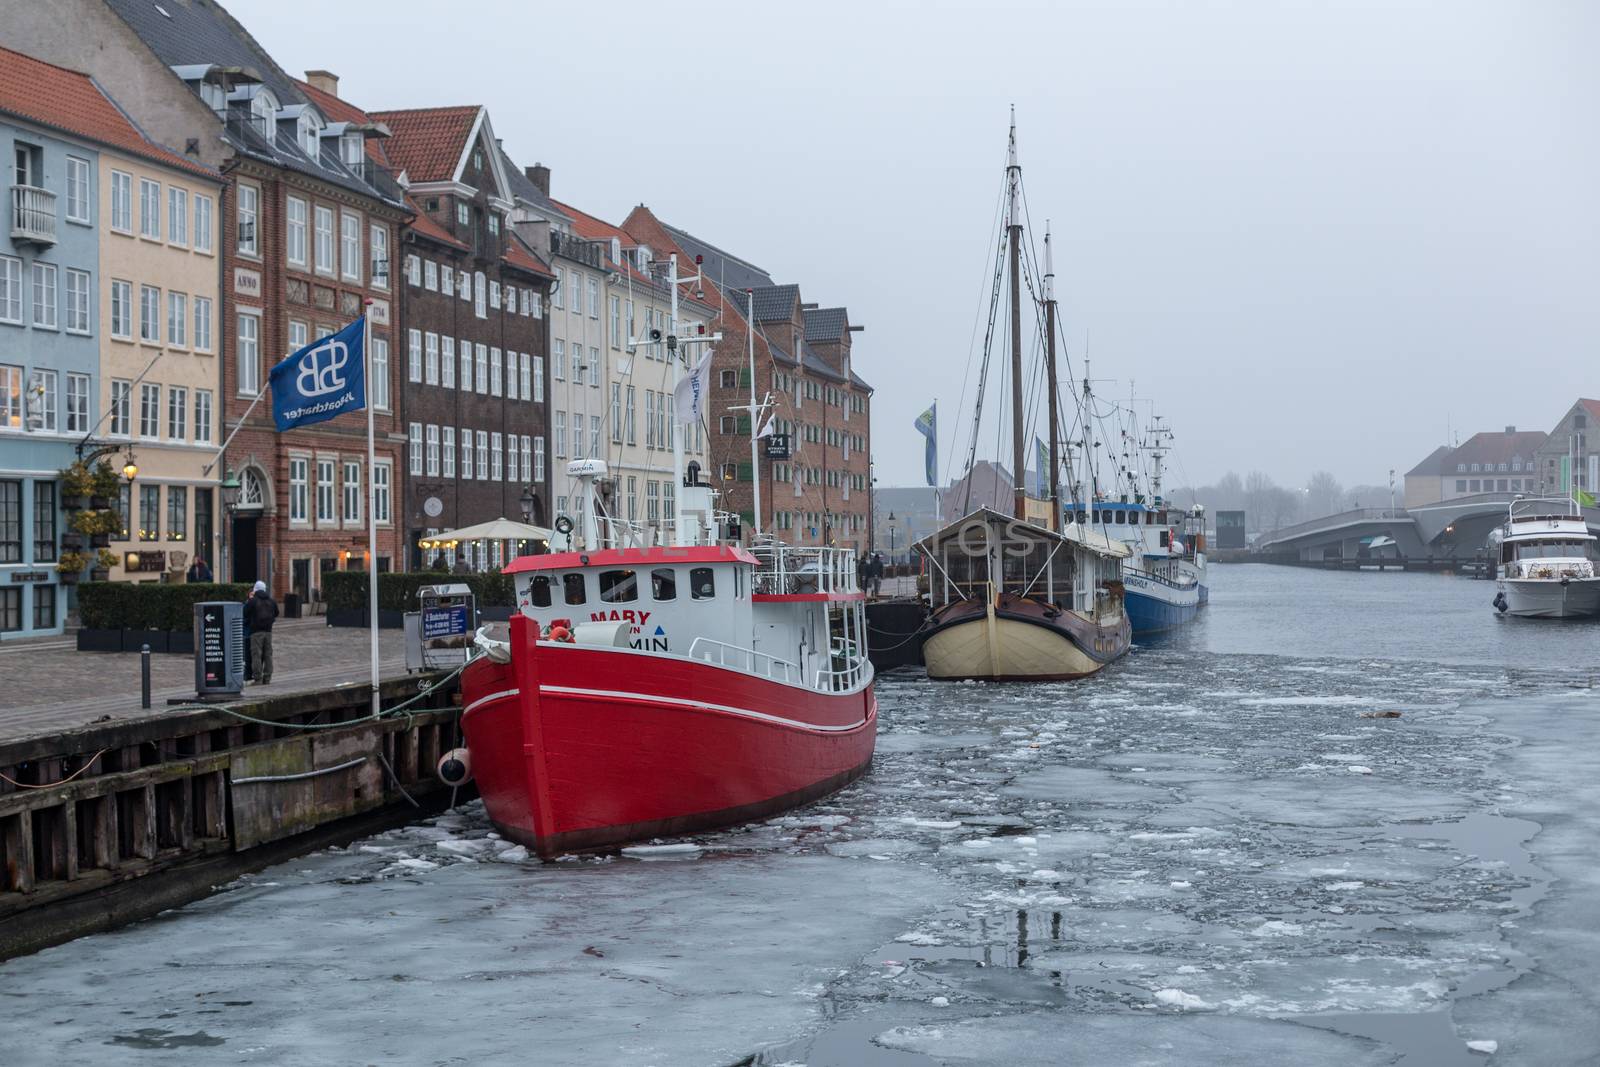 Frozen Nyhavn canal in Copenhagen, Denmark by oliverfoerstner